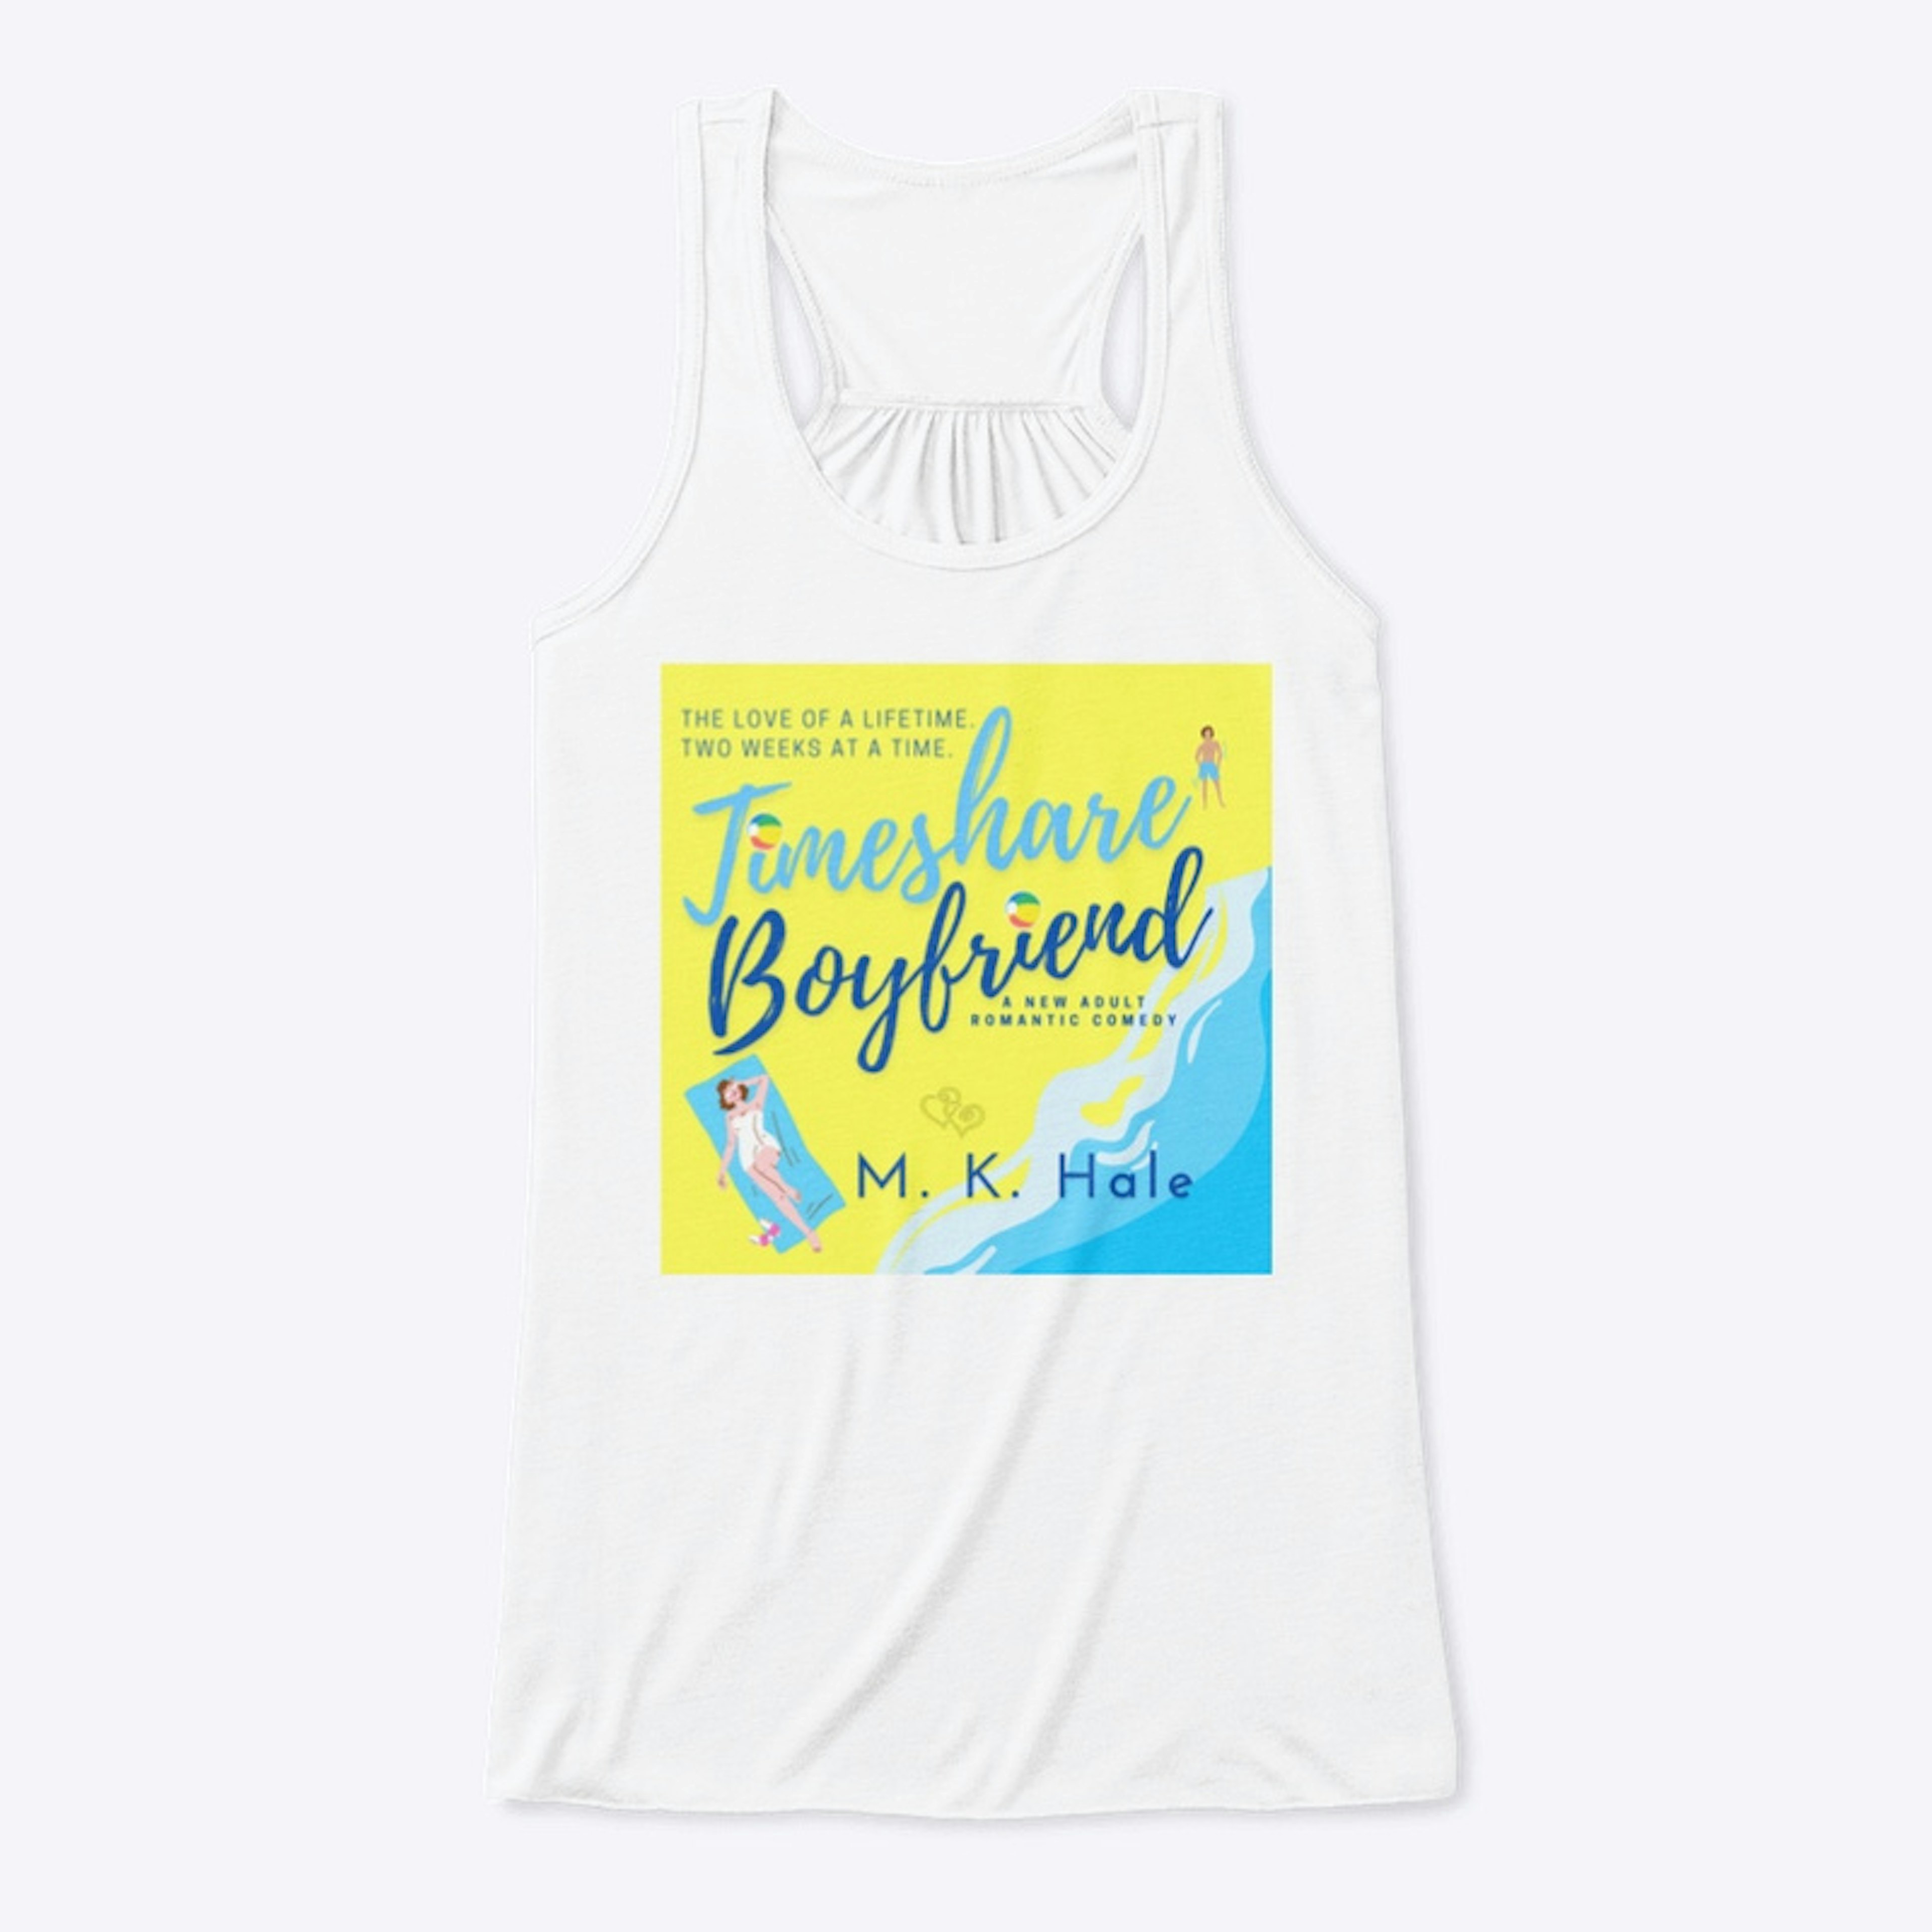 Timeshare Boyfriend Merchandise